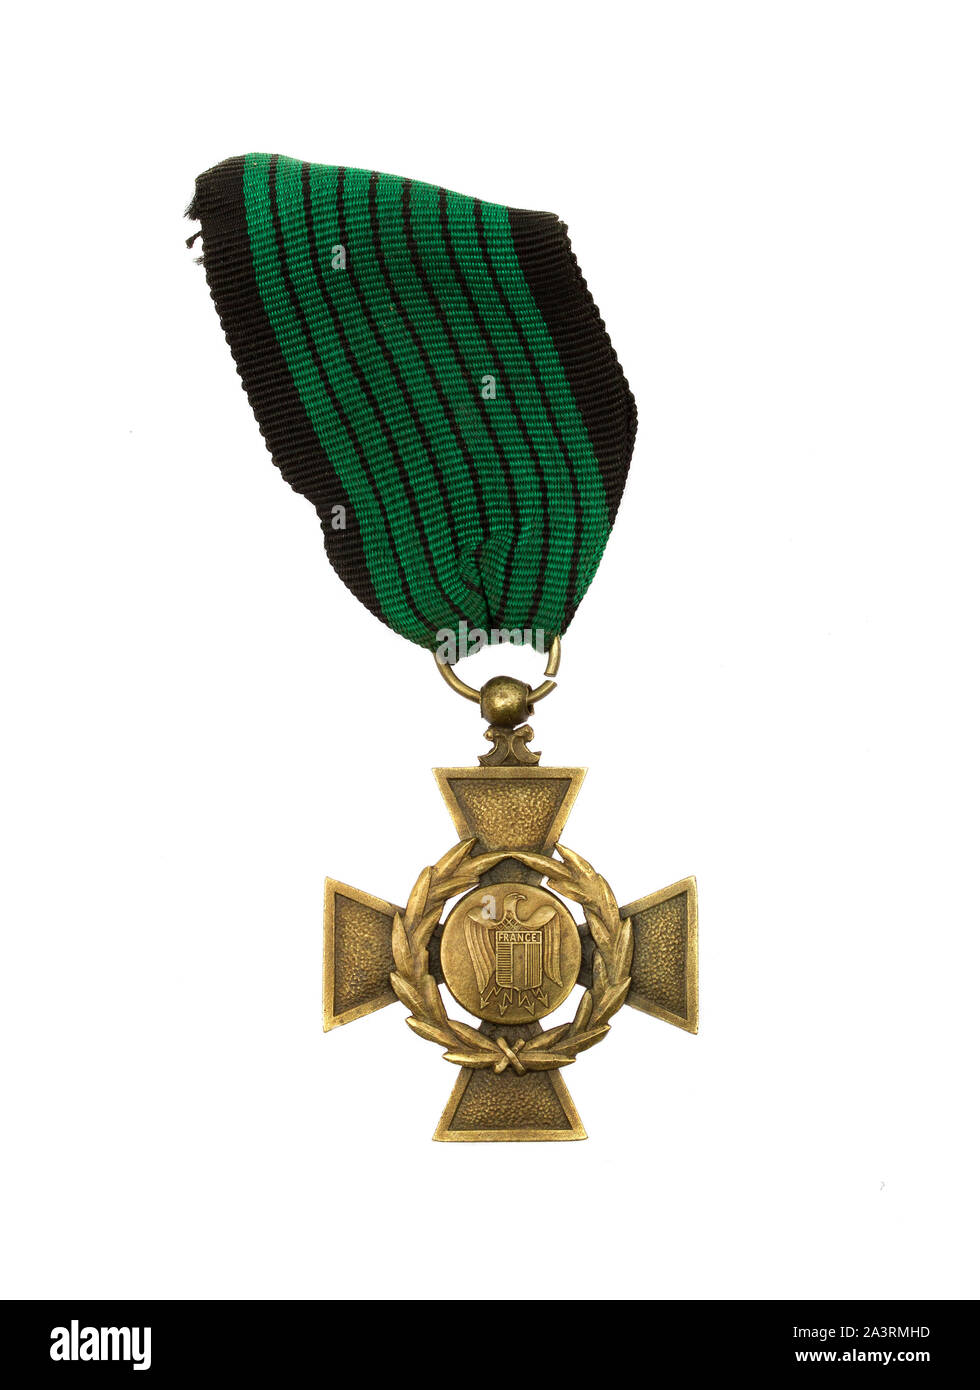 Guerra francese cross Legionnaire Croix de Guerre Légionnaire, una rara Vichy Award istituito nel luglio 6, 1942, come riconoscimento per l'eroica contri militare Foto Stock